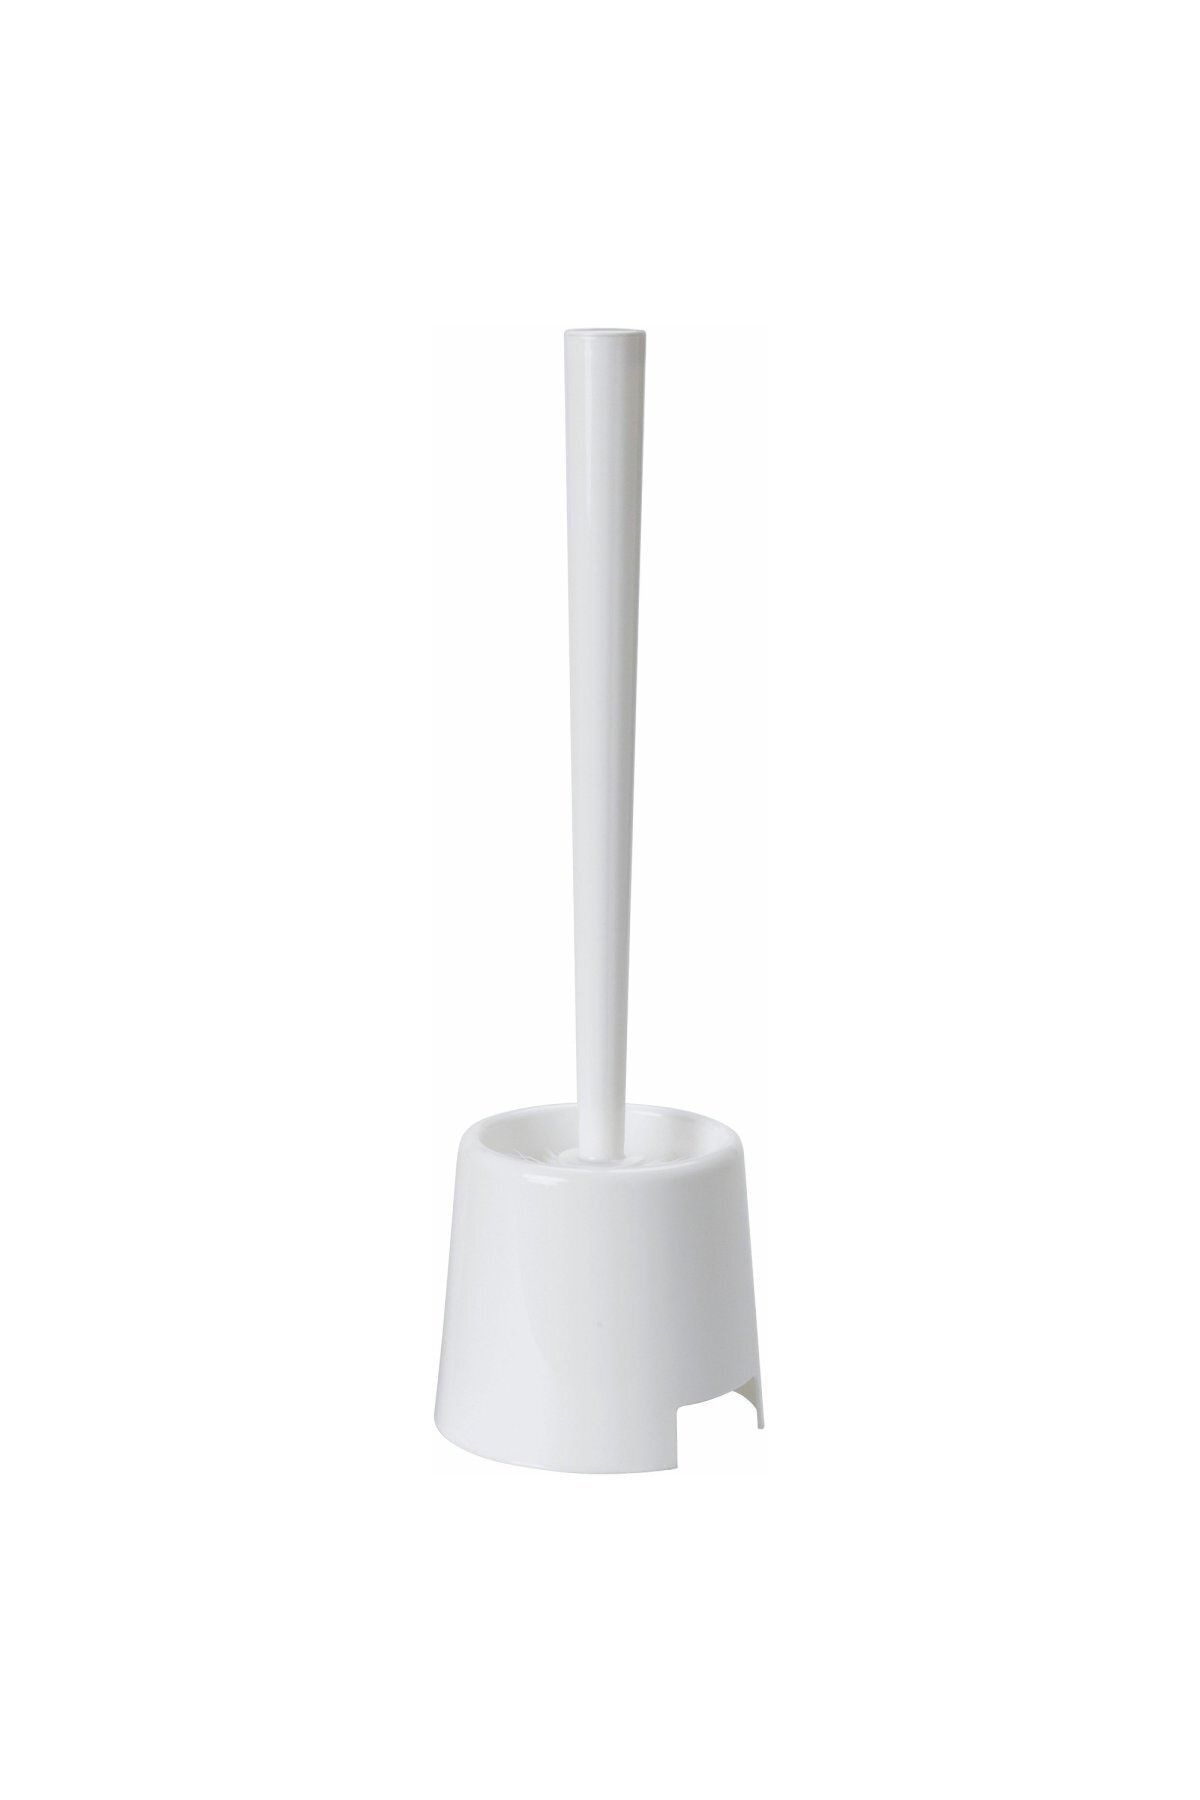 IKEA Bolmen Plastik Tuvalet Klozet Fırçası - Beyaz